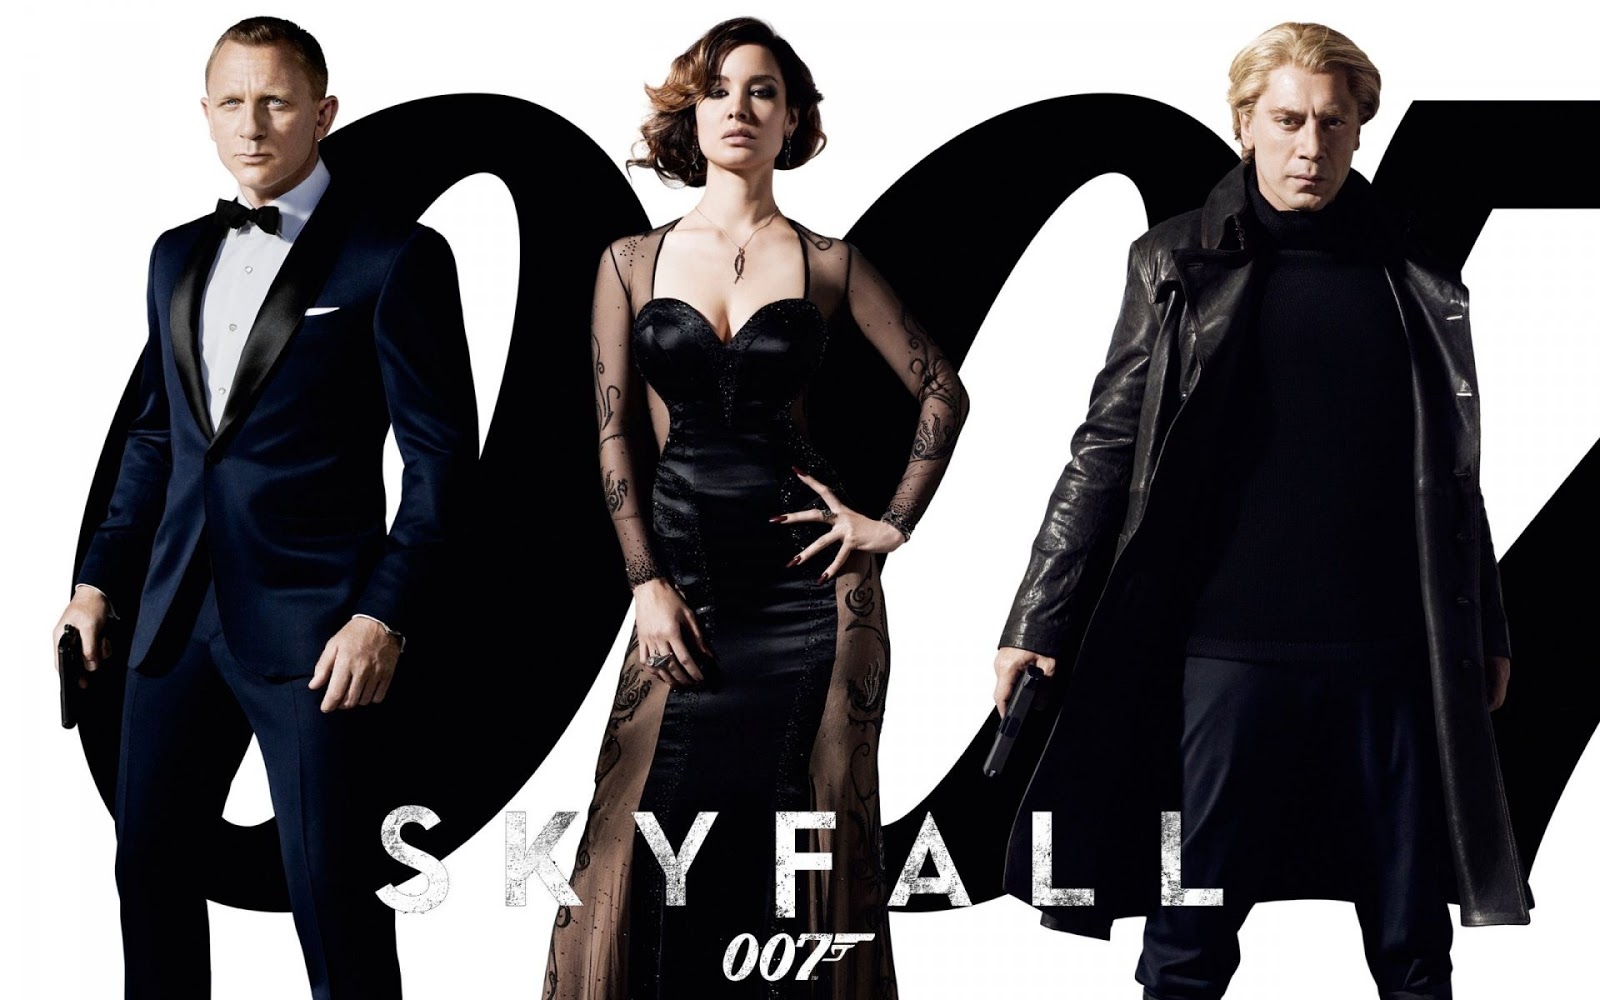 007 tapete,mode,formelle kleidung,gotische mode,kleines schwarzes kleid,passen